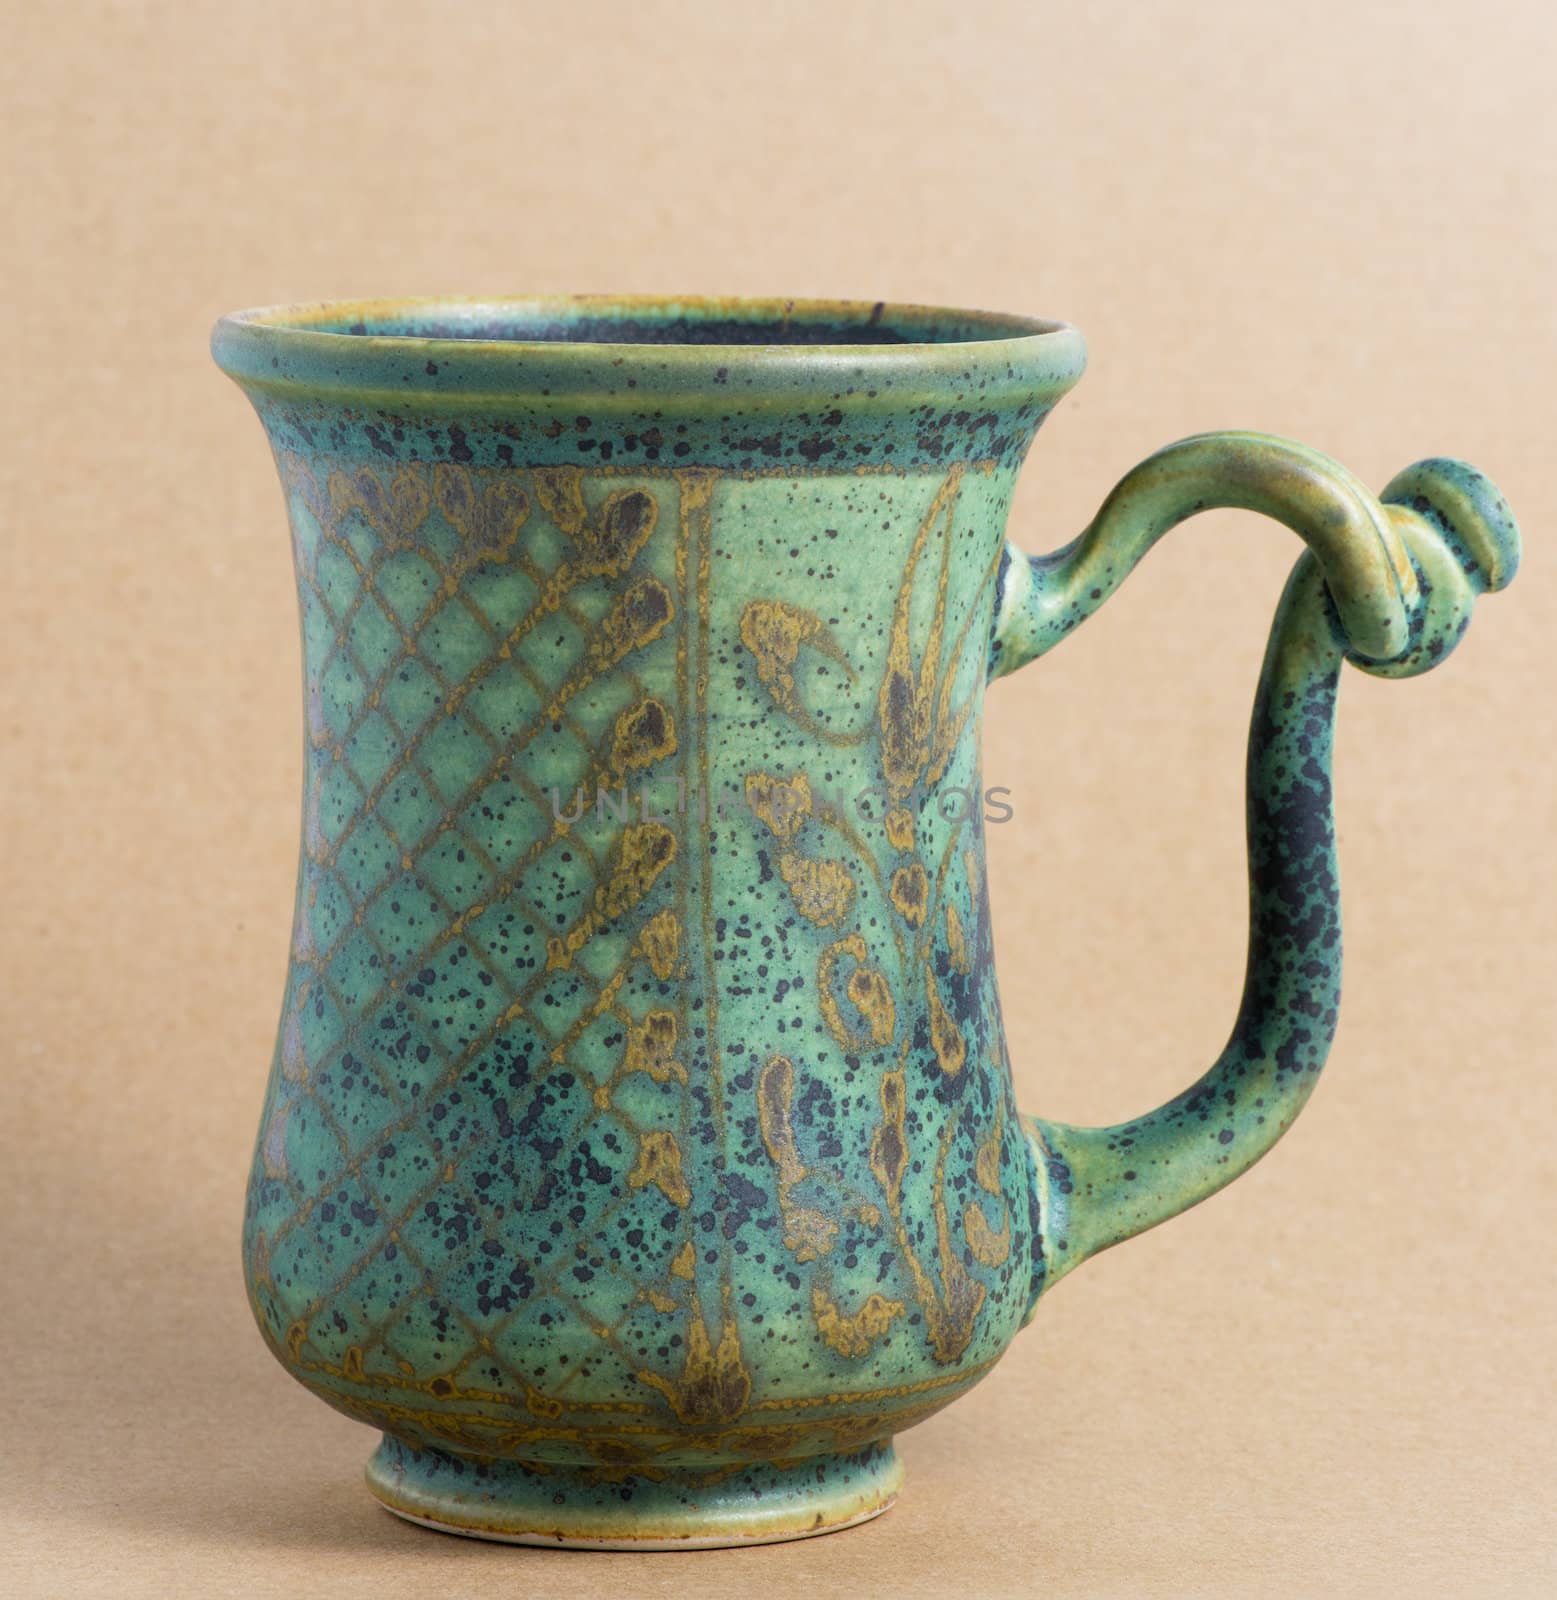 Coffee or tea mug isolated on background